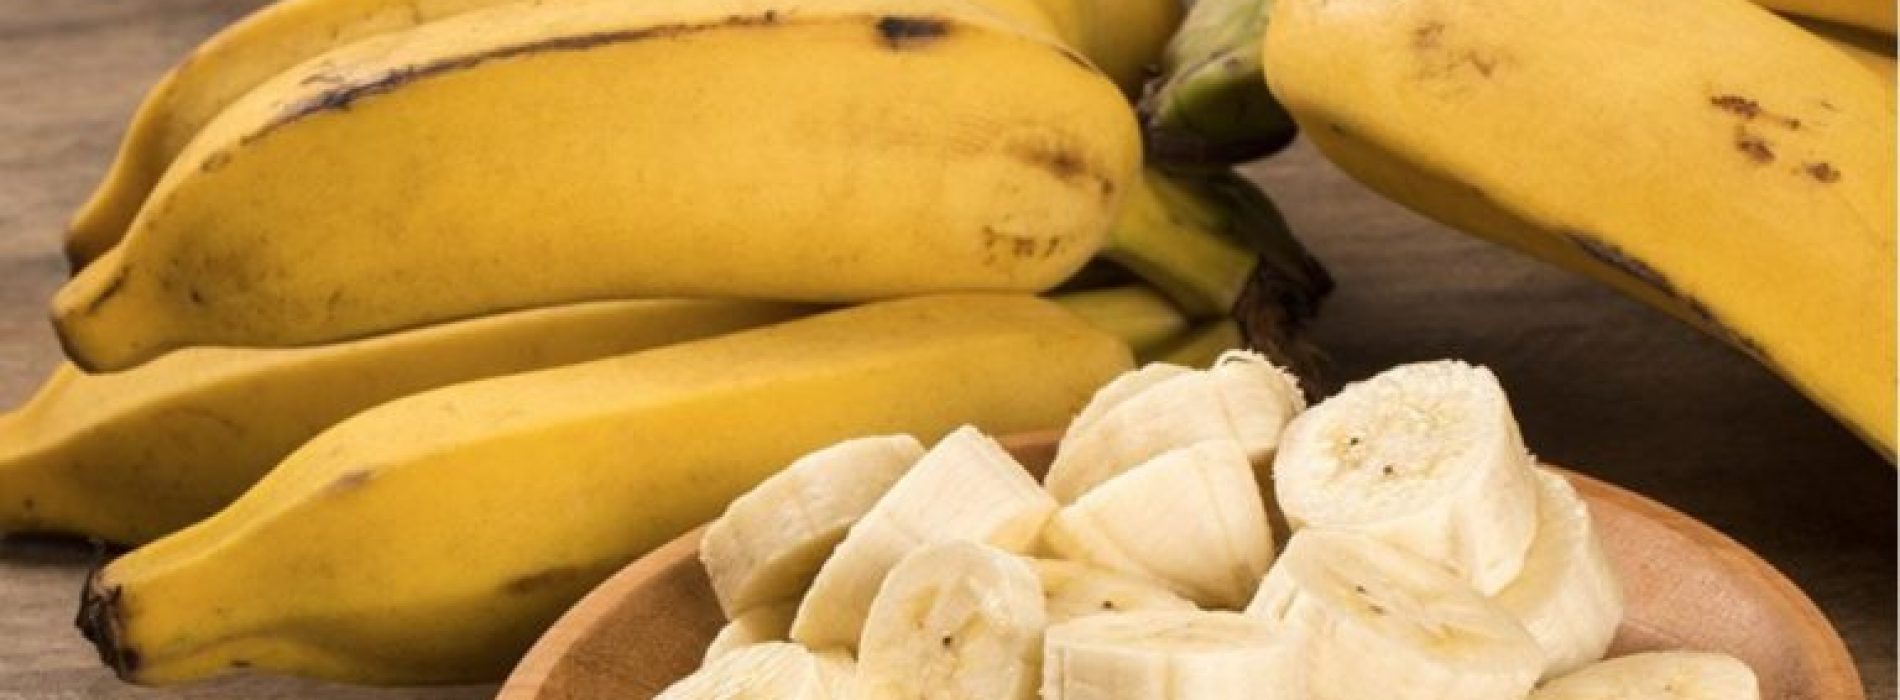 12 problemen die bananen beter kunnen oplossen dan pillen